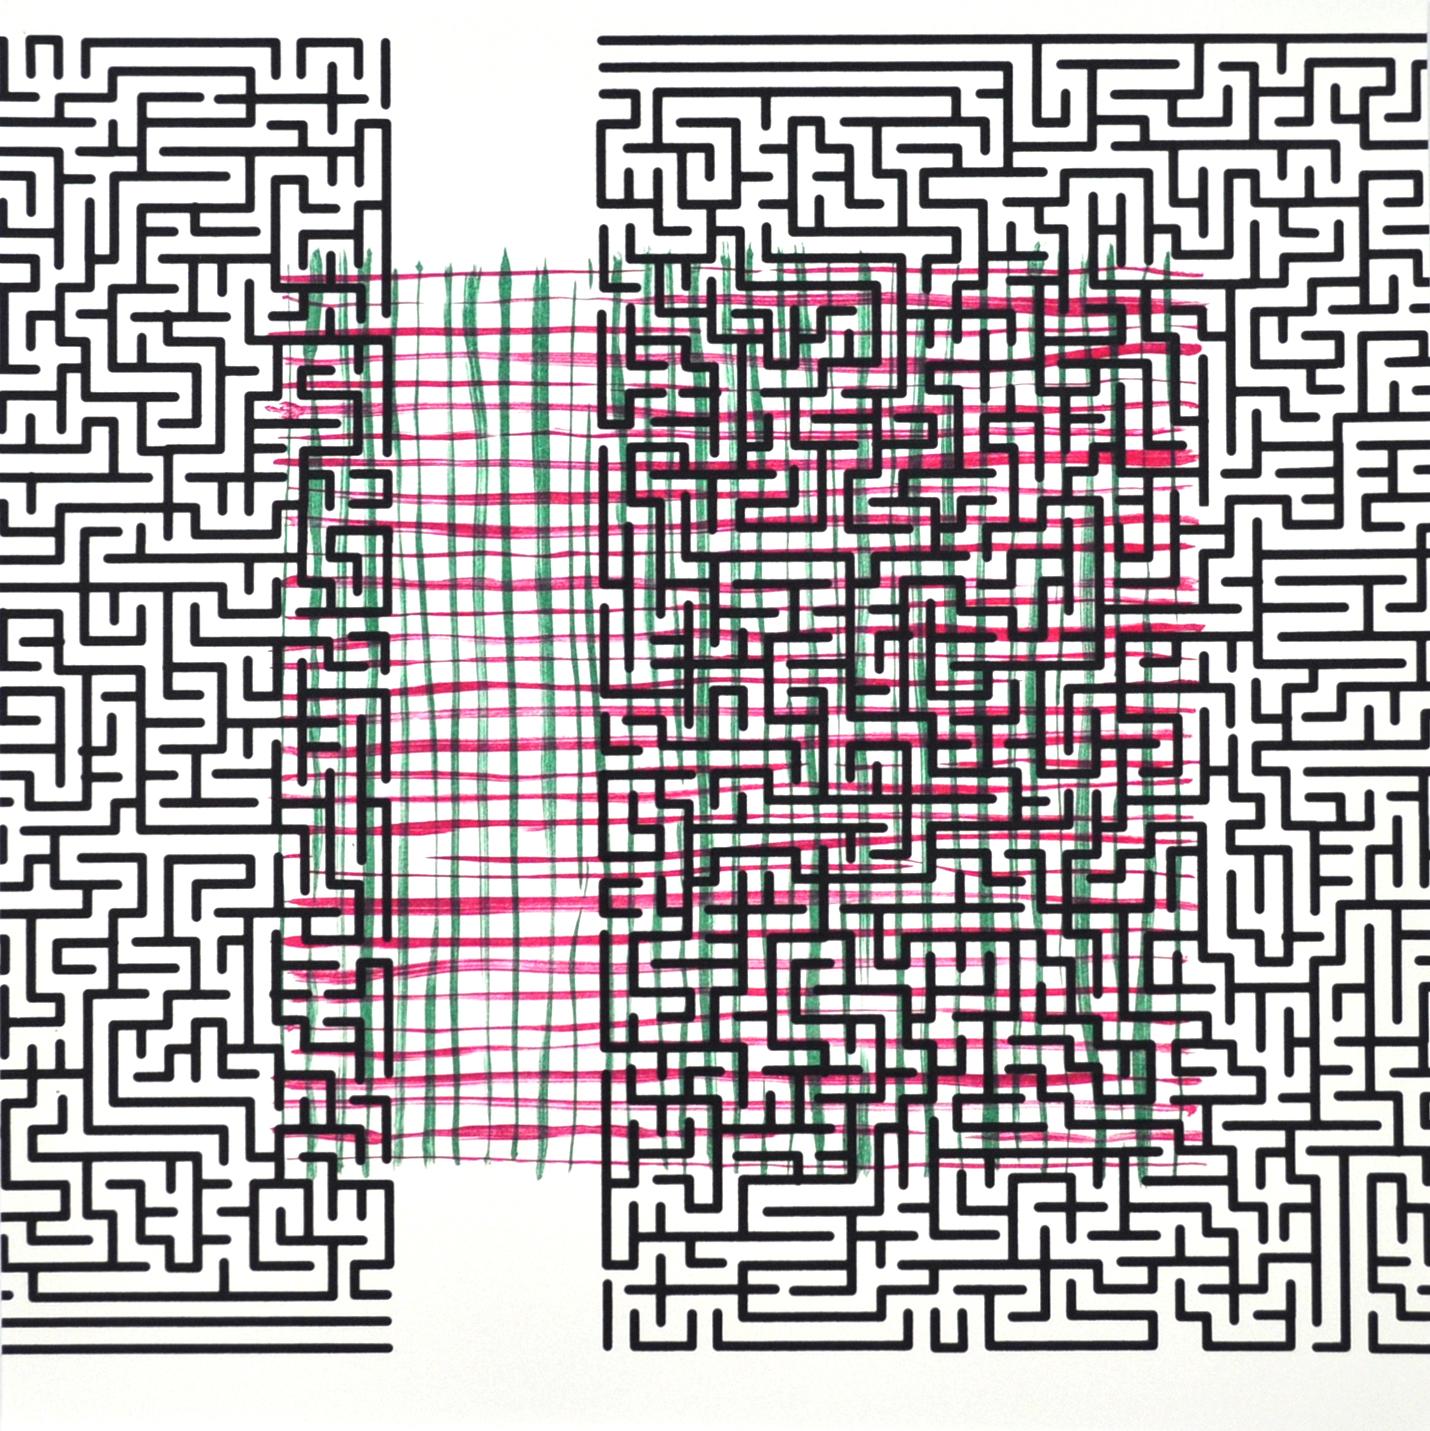 Claus Handgaard Jørgensen Abstract Print - “Pattern Break  (delusion)” Scandinavian Screen Print and Lithograph